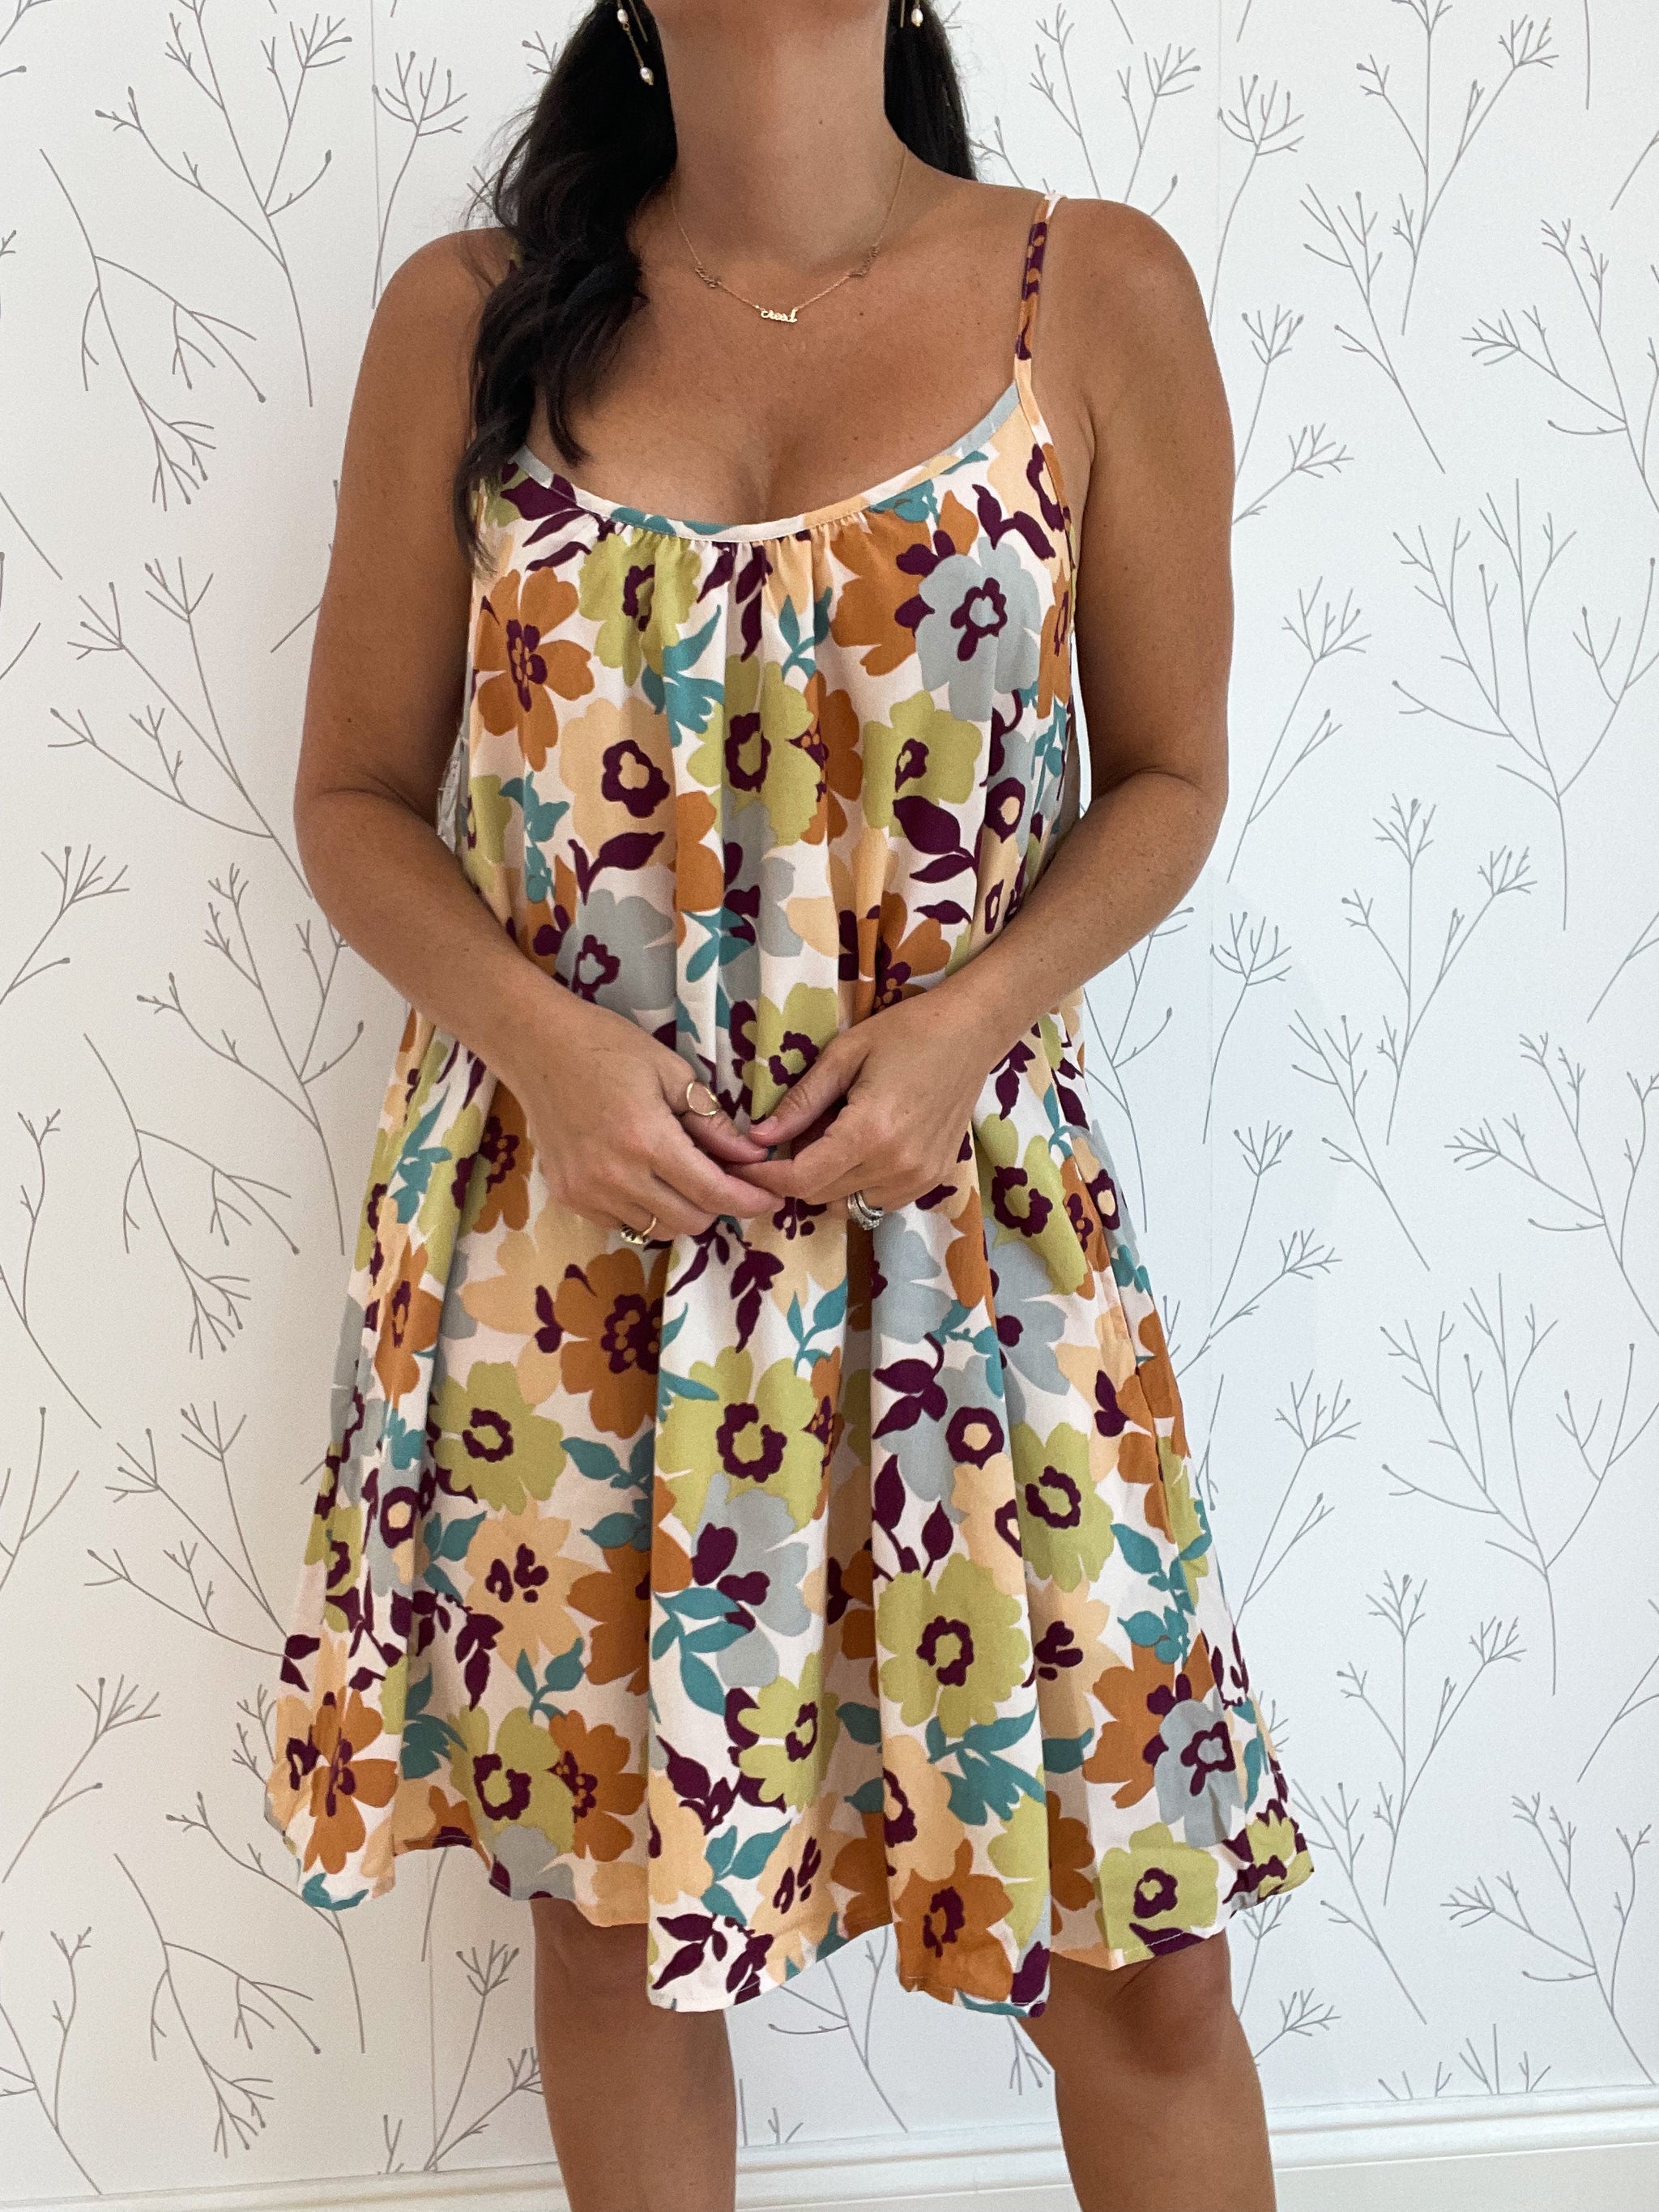 Floral Print Cami Dress w/ Pockets – 3 jems boutique